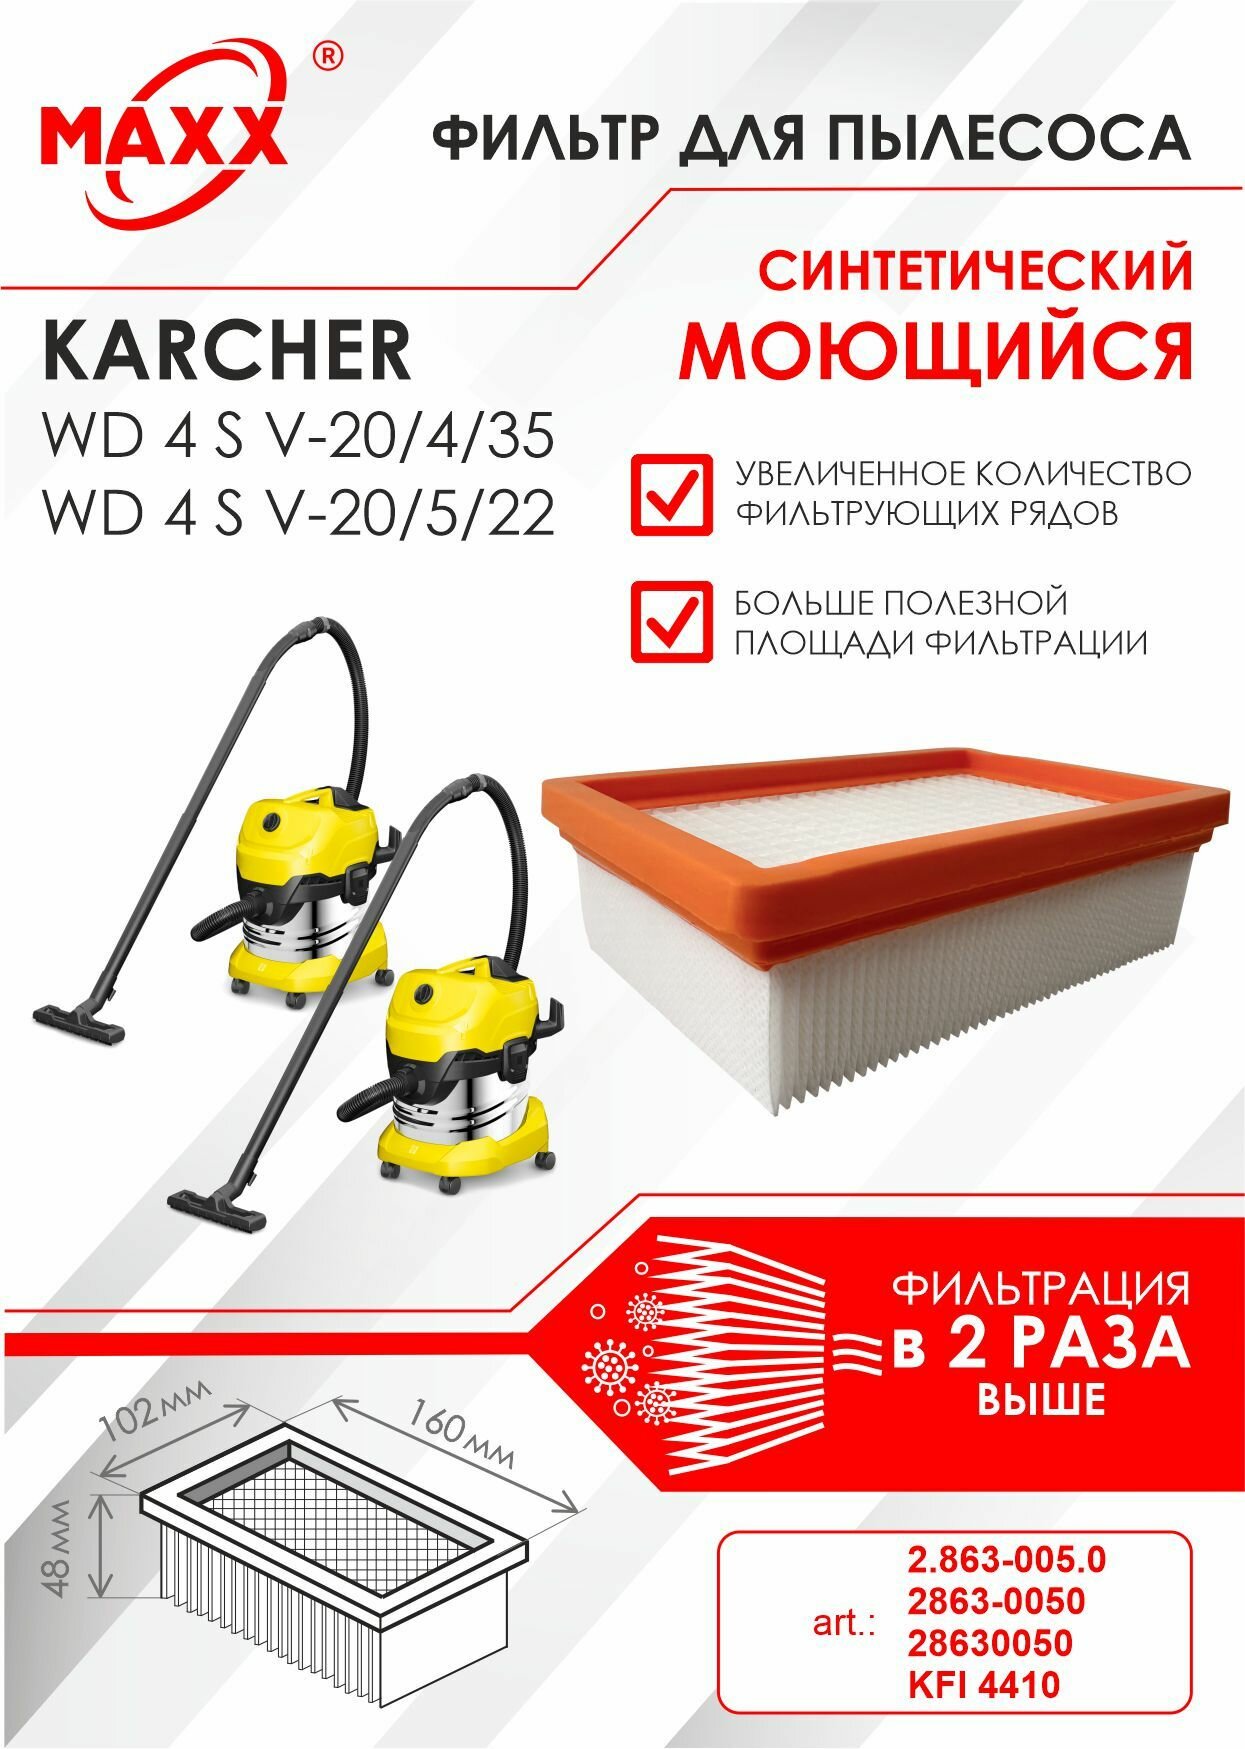 Плоский складчатый фильтр синтетический моющийся для пылесоса Karcher WD 4 S V-20/4/35 Karcher WD 4 S V-20/5/22 (KFI 4410)